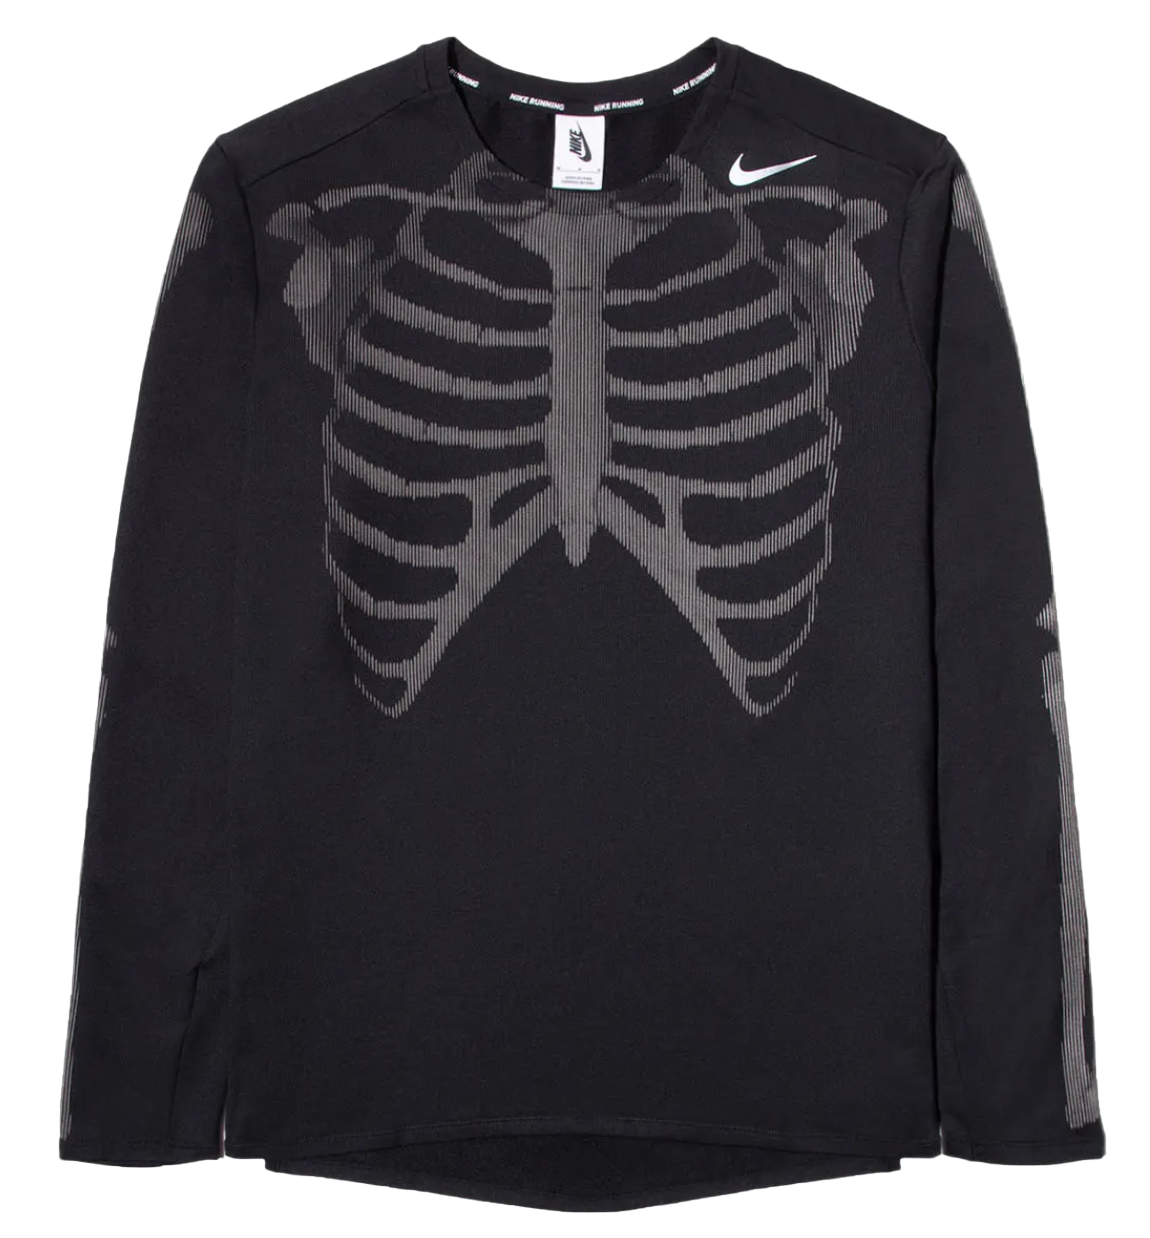 Nike Men's Skeleton Top Black - FW19